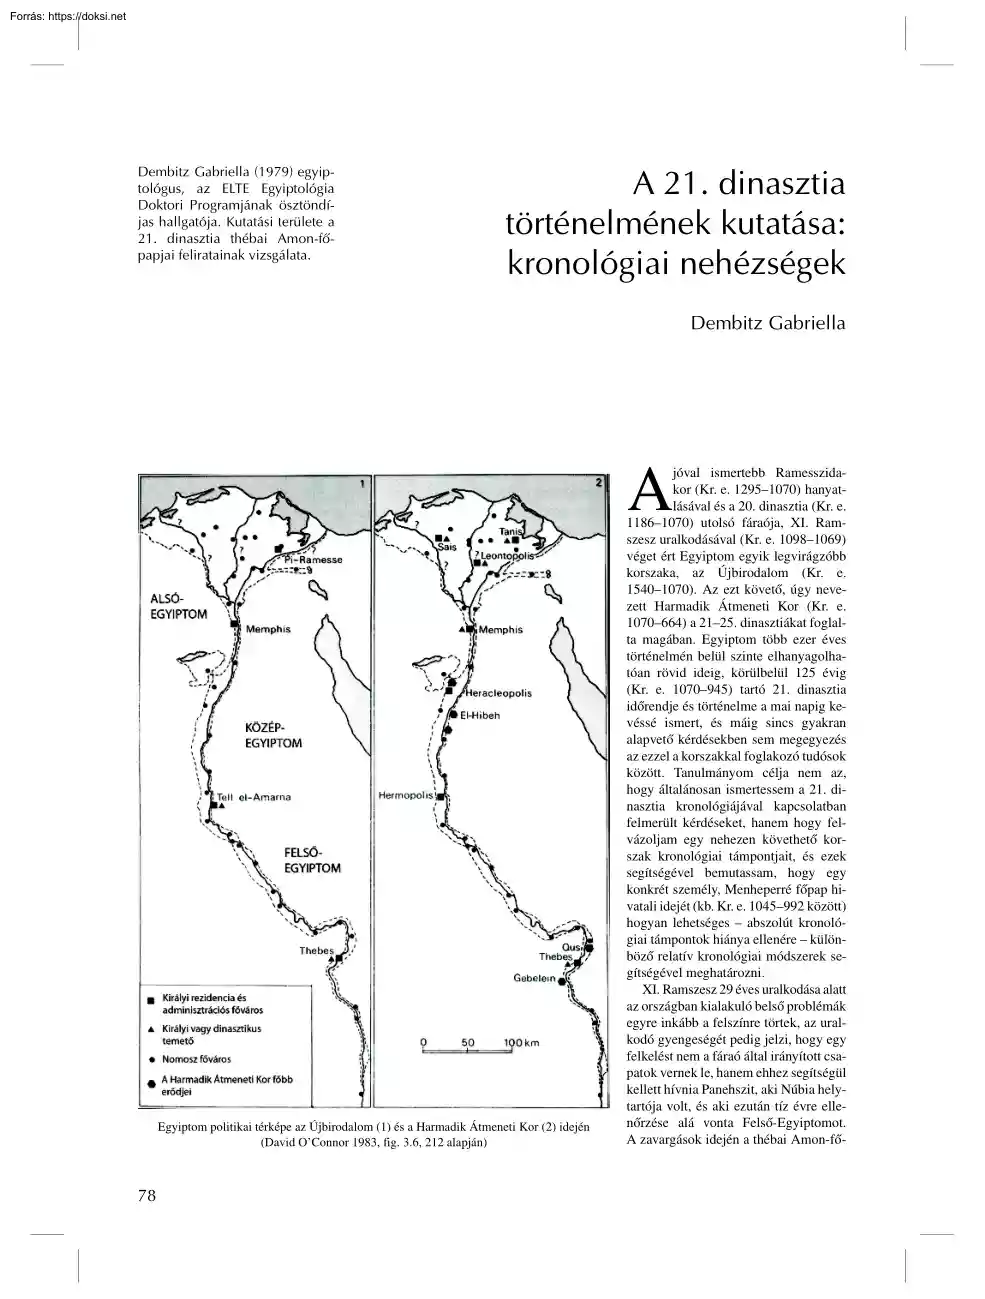 Dembitz Gabriella - A 21. dinasztia történelmének kutatása, kronológiai nehézségek